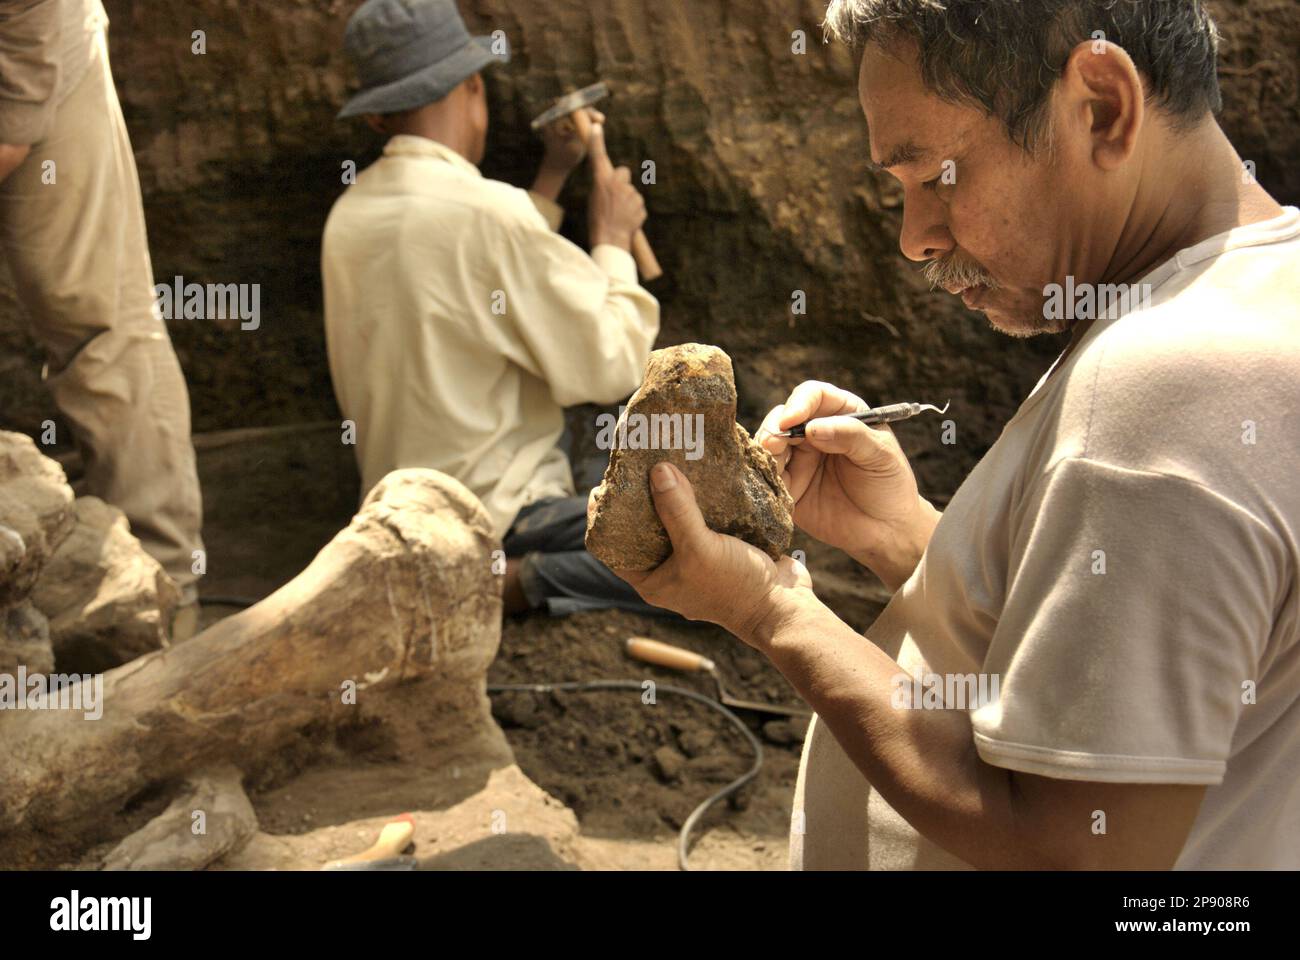 Fachroel Aziz, professore di ricerca di paleontologia vertebrata, viene fotografato presso il sito di scavo di Elephas hysudrindicus, una specie di elefante estinta vissuta durante l'epoca del Pleistocene, più tardi conosciuta come 'elefante di Blora', a Sunggun, Mendalem, Kradenan, Blora, Giava Centrale, Indonesia. Foto Stock